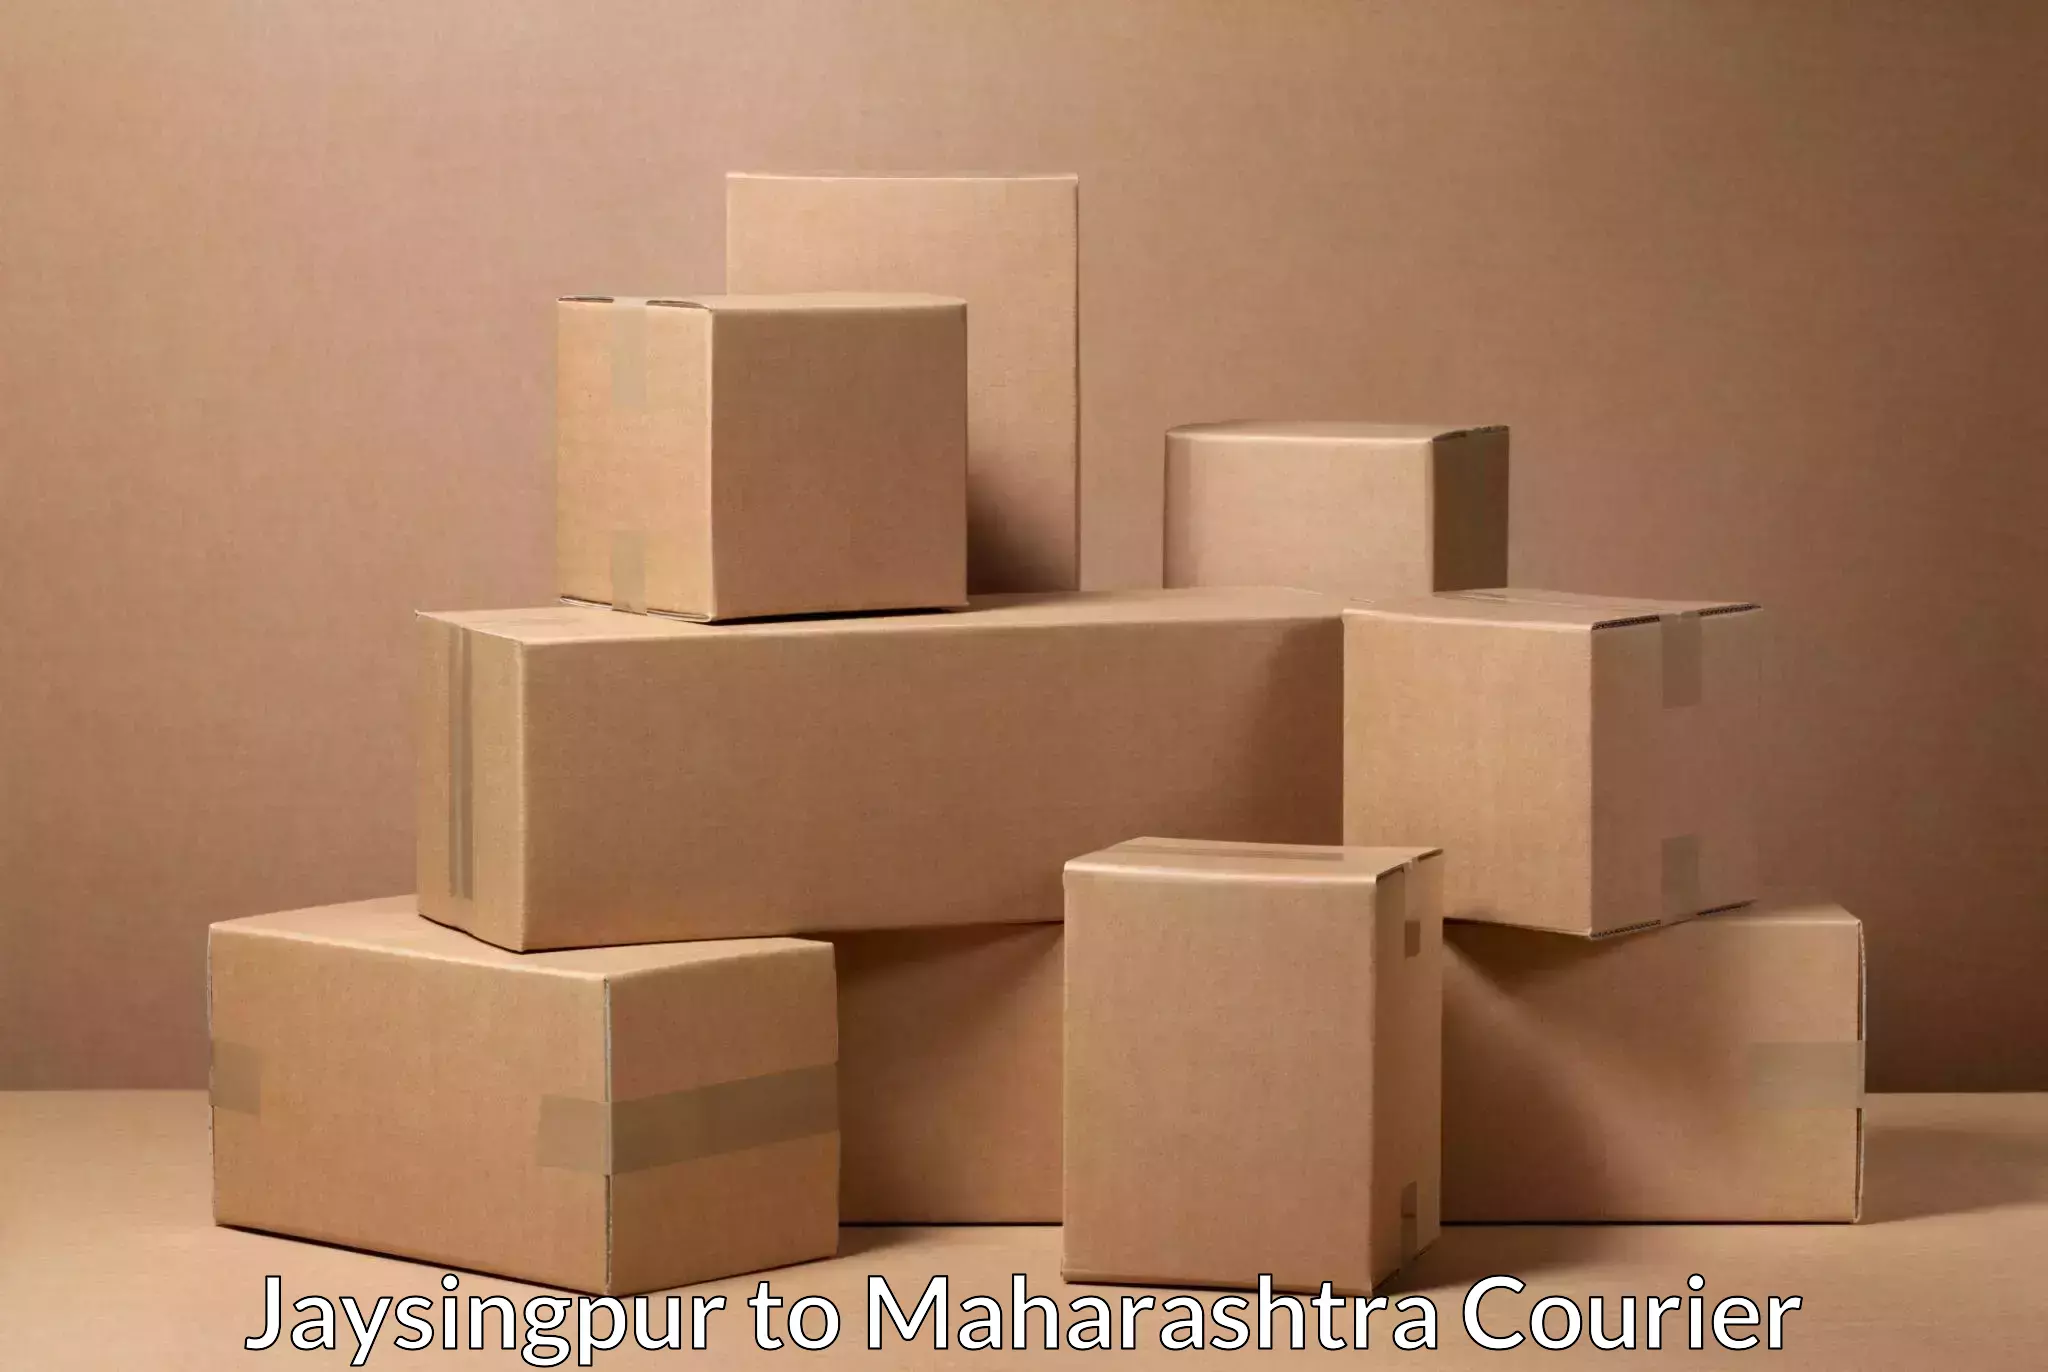 High-performance logistics Jaysingpur to Mahim